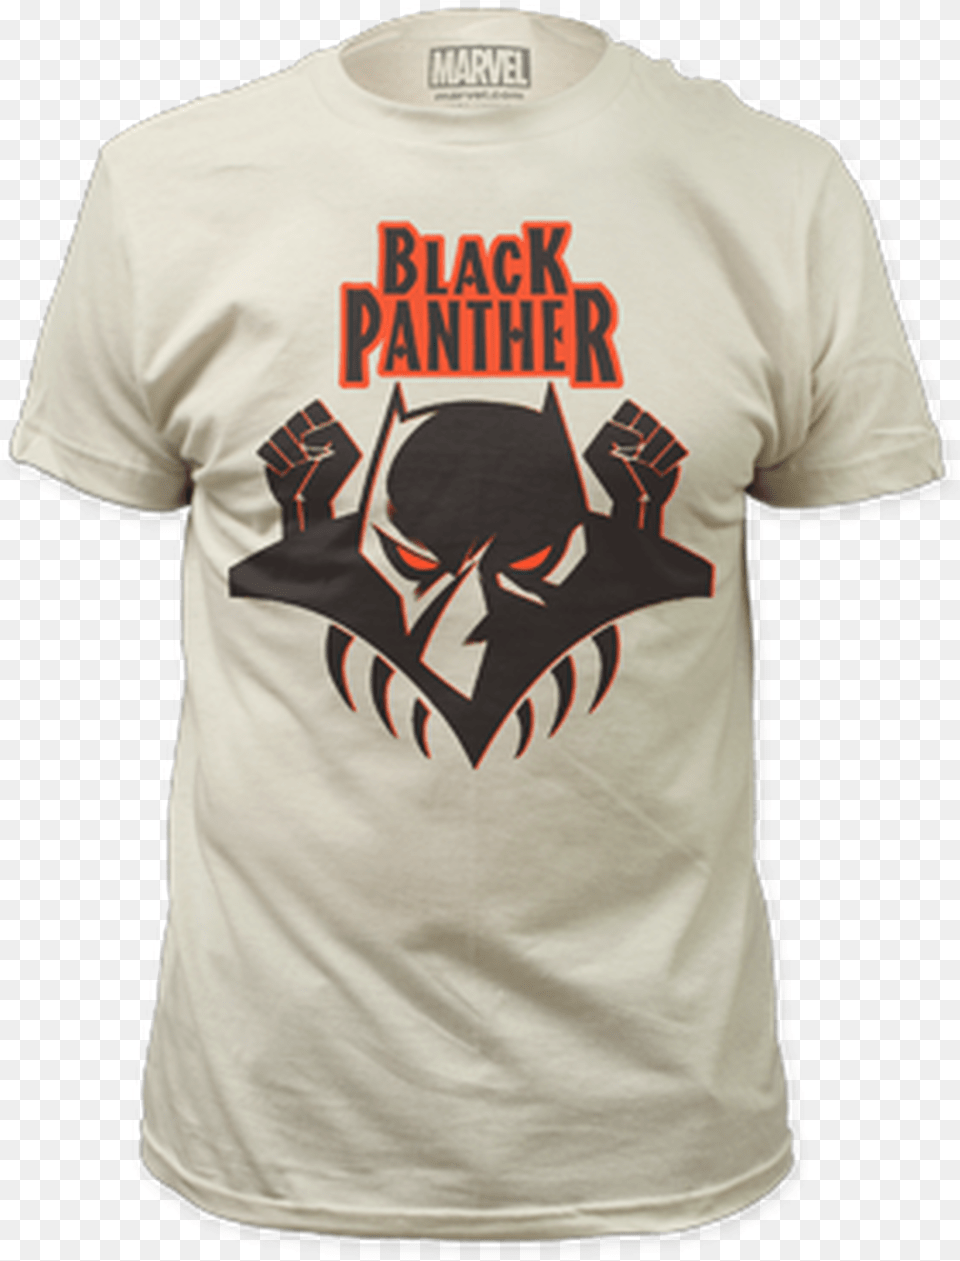 Black Panther Logo, Clothing, Shirt, T-shirt, Body Part Free Png Download